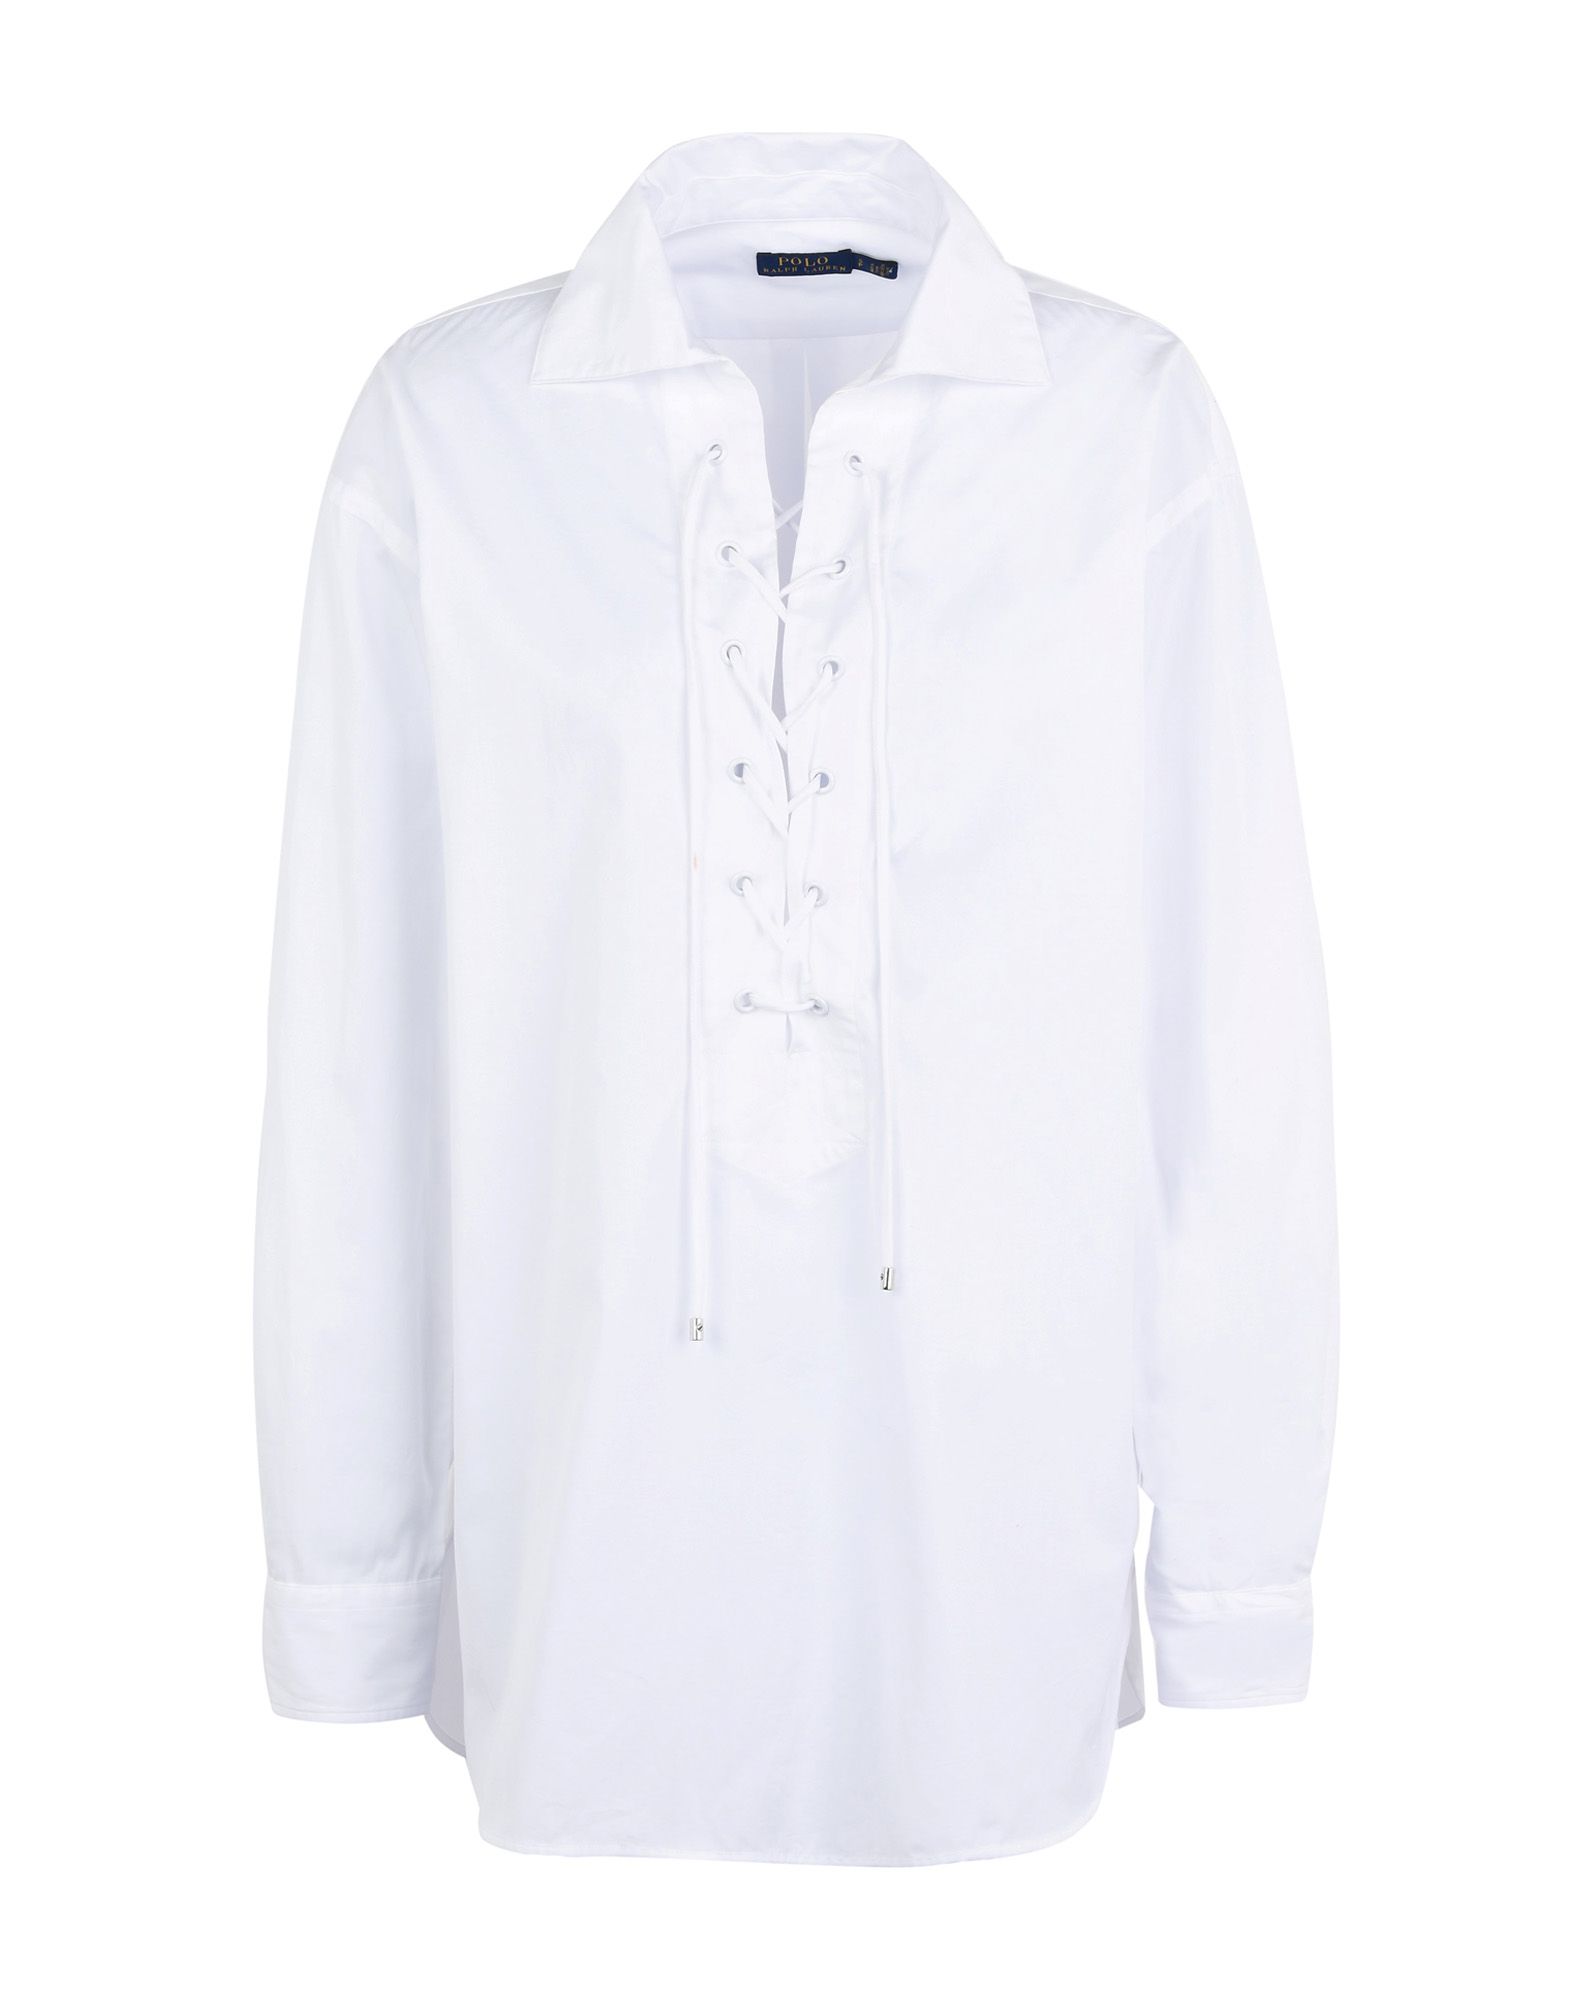 《送料無料》POLO RALPH LAUREN レディース ブラウス ホワイト XS コットン 100% Broadcloth Lace-Up Shirt